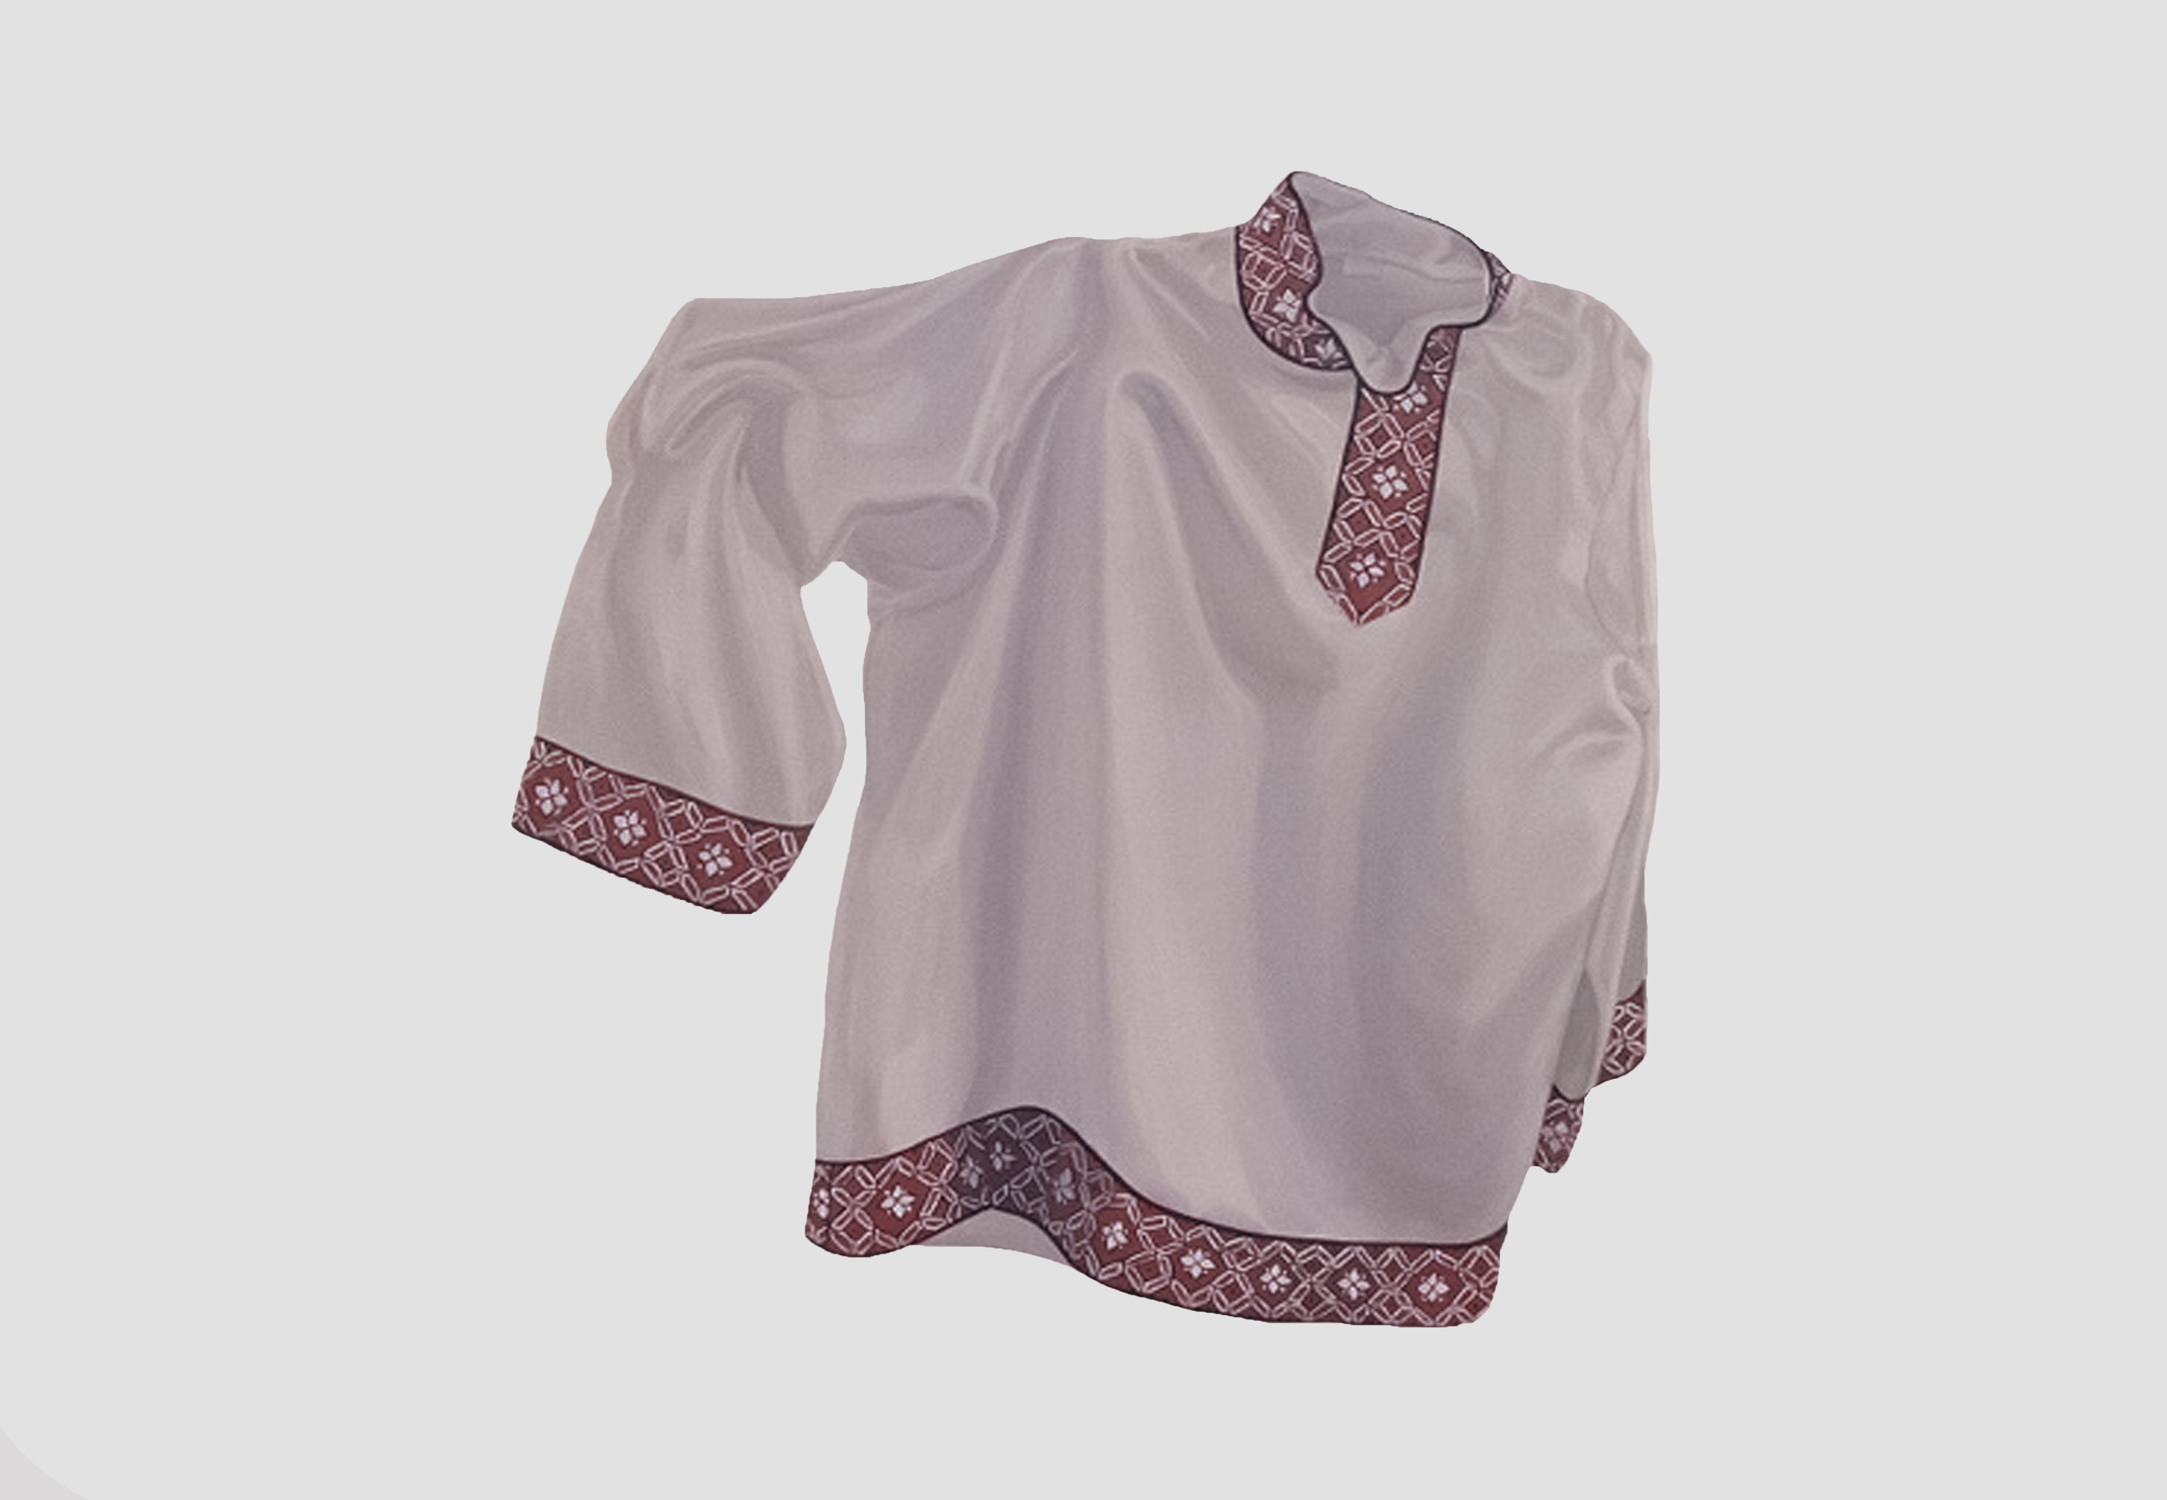  Cossack Shirt, 40 x 41”, 1974 